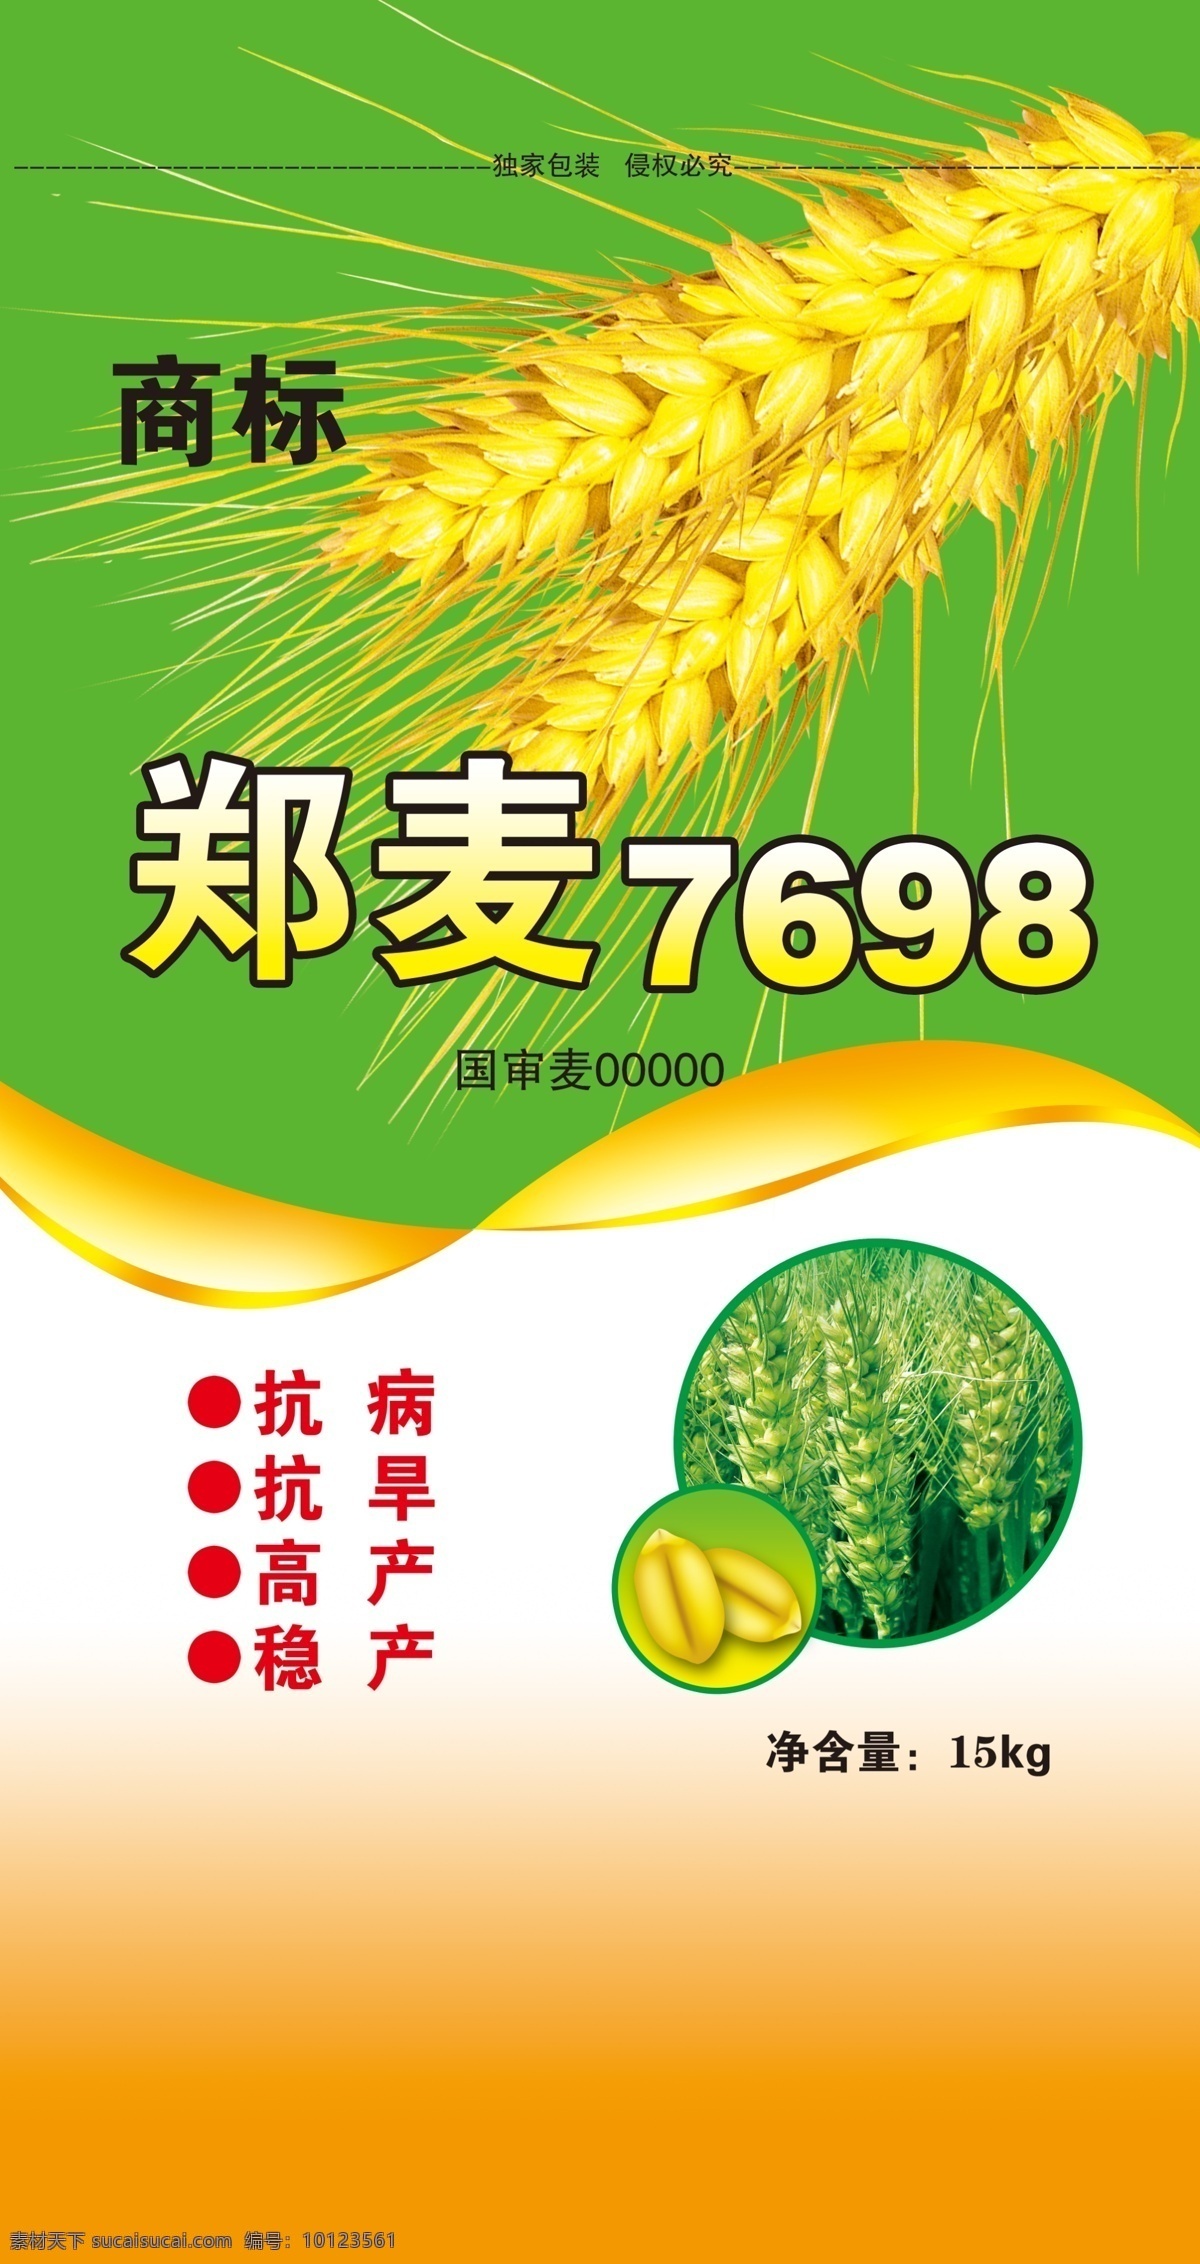 小麦 包装 模板下载 小麦包装 郑麦7698 小麦地 小麦粒 小麦穗 包装设计 广告设计模板 源文件 绿色